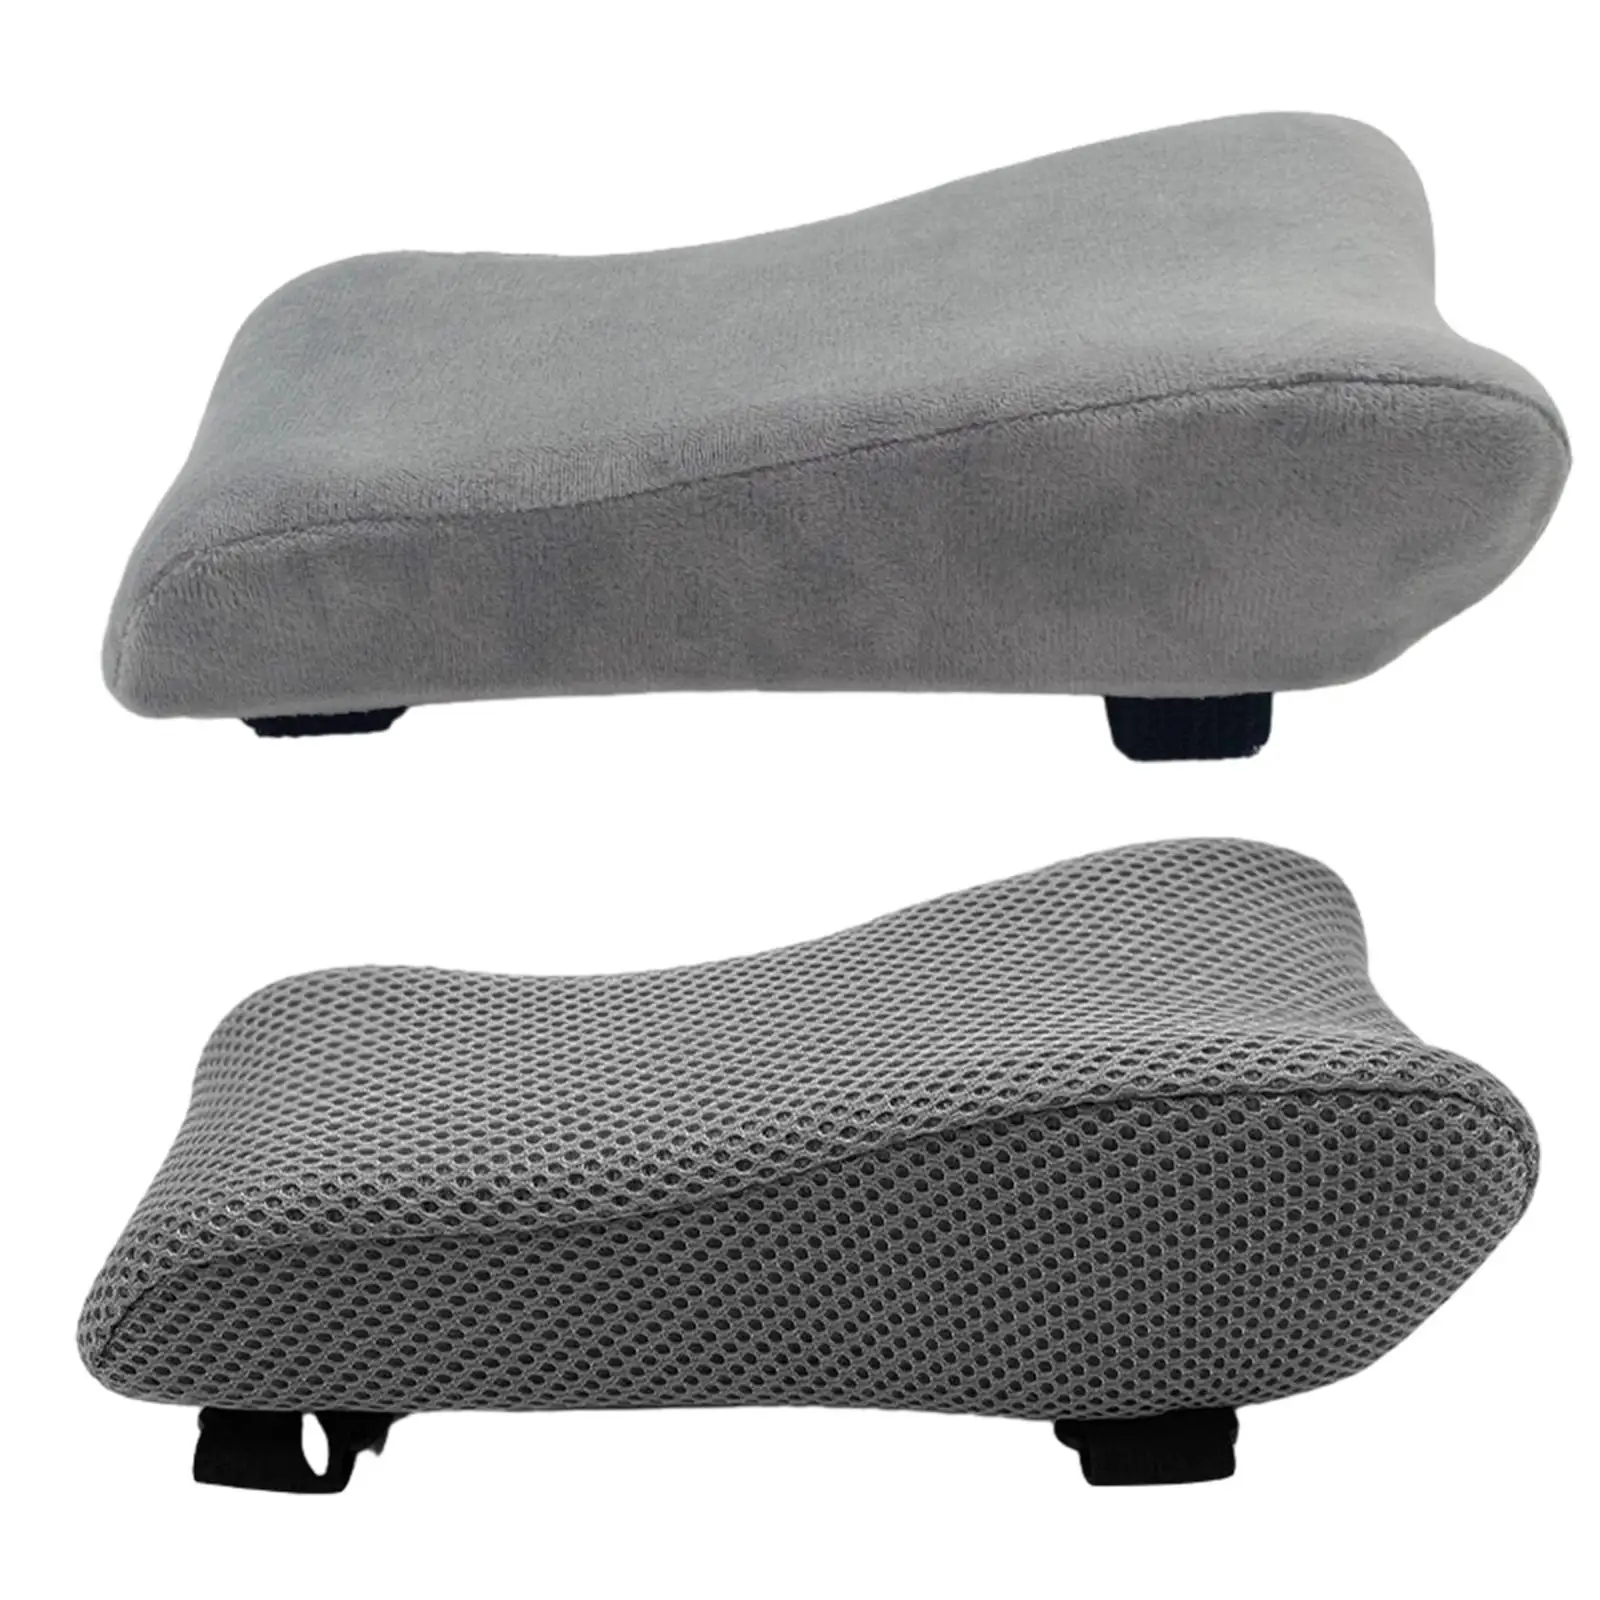 Armrest Pads Office Lightweight Universal Zipper Cover Chair Arm Rest Pillow